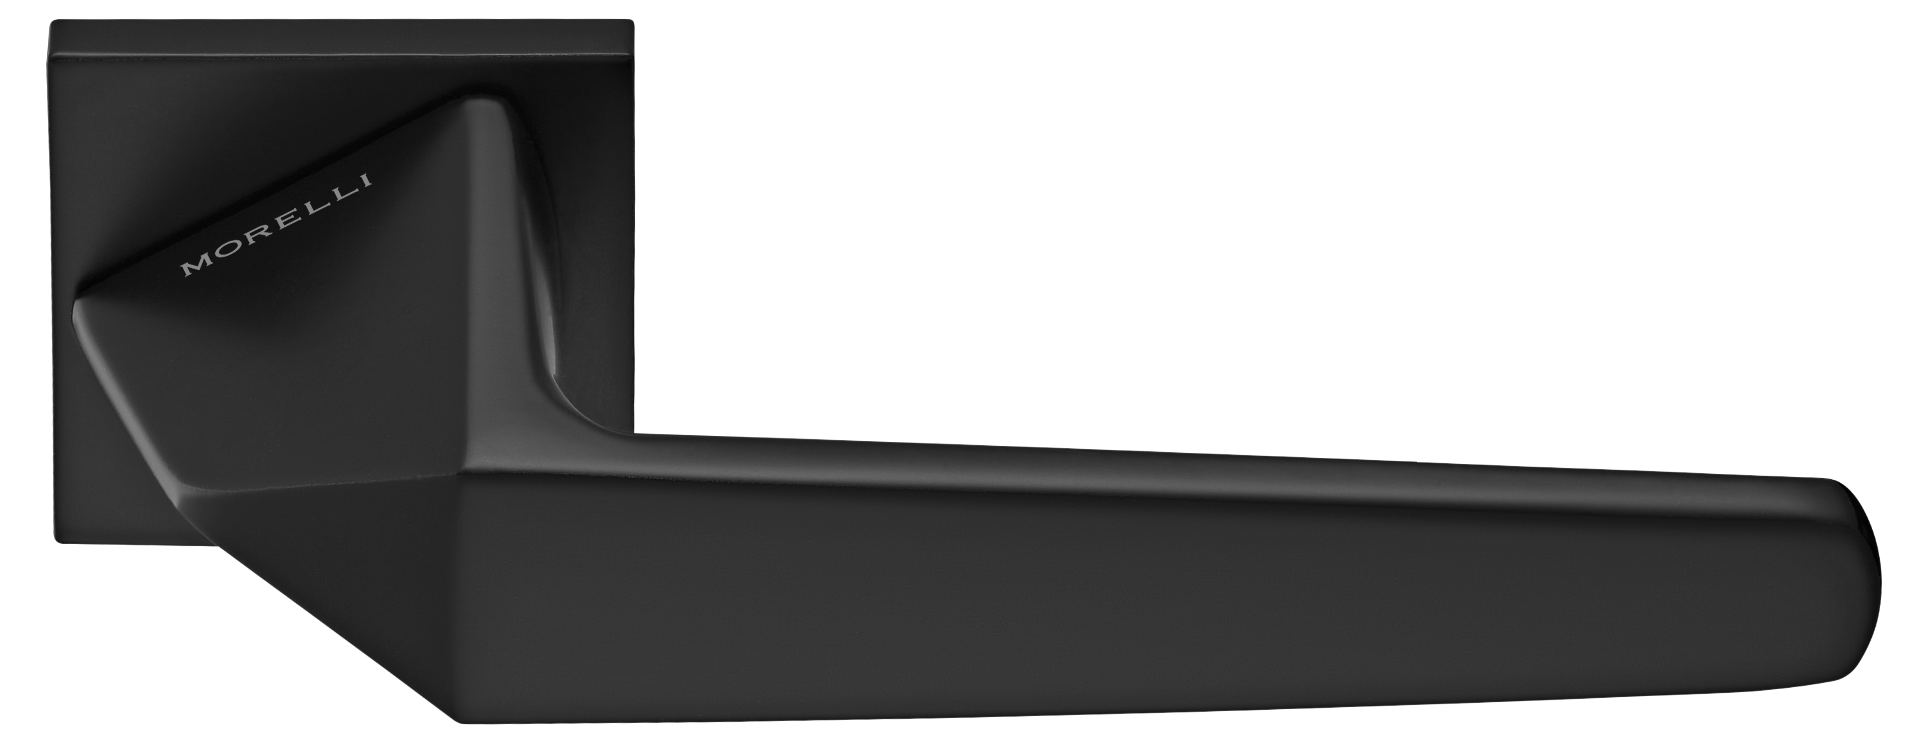 SOUK ручка дверная на квадратной розетке 6 мм, MH-55-S6 BL, цвет - черный фото купить Актобе (Актюбинск)